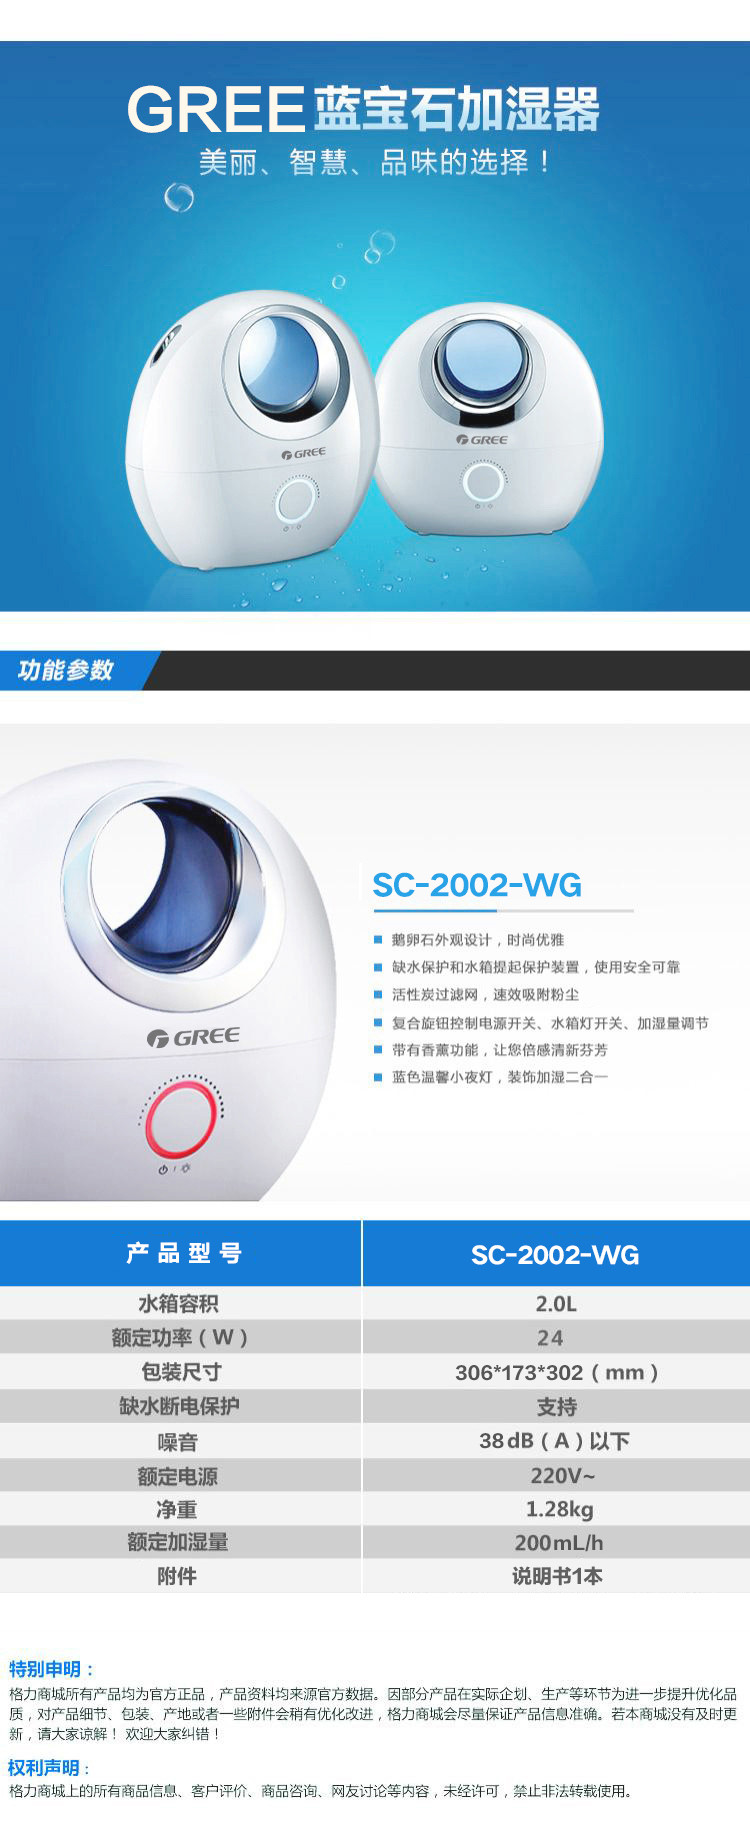 格力加湿器SC-2002-WG(GREE)